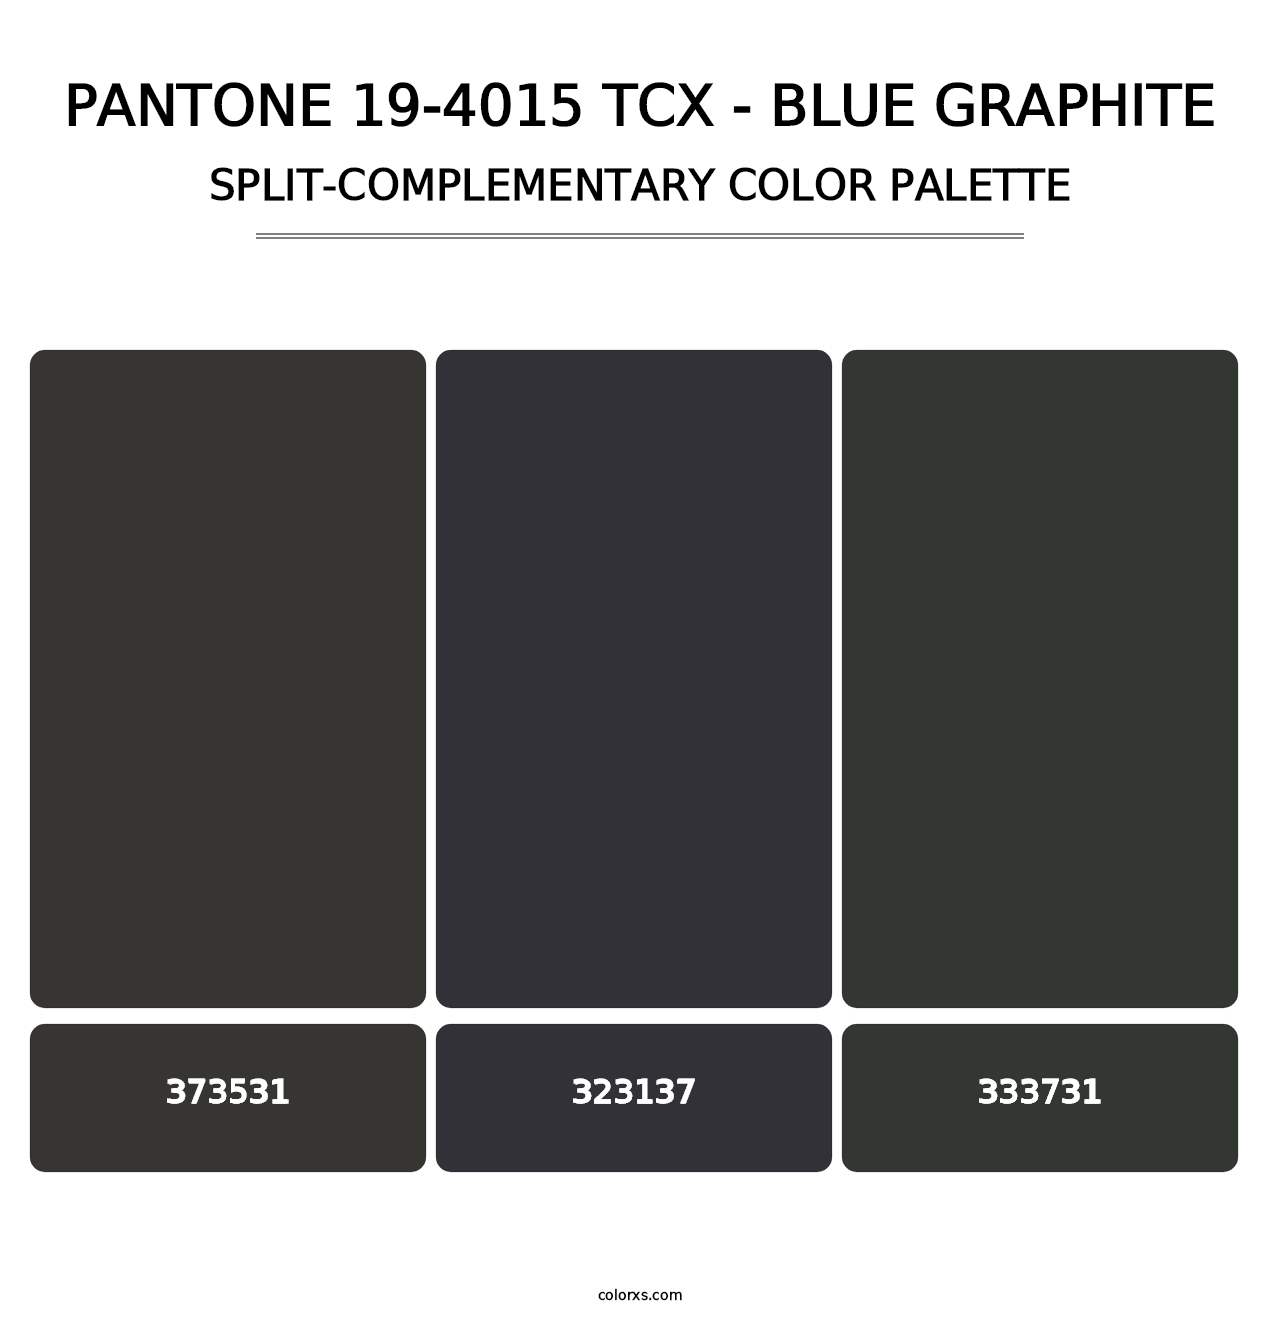 PANTONE 19-4015 TCX - Blue Graphite - Split-Complementary Color Palette